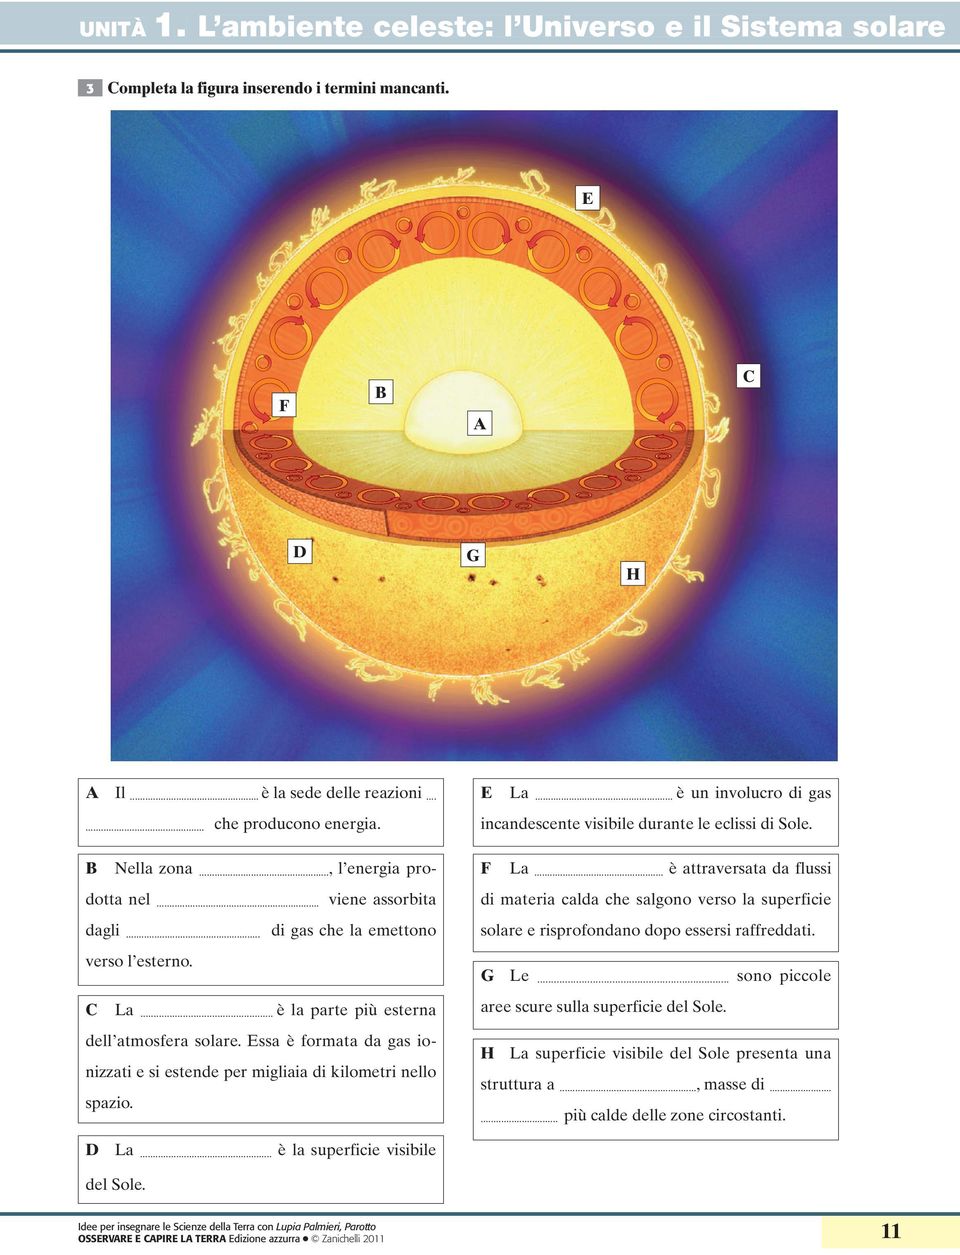 è la superficie visibile del Sole. E La... è un involucro di gas incandescente visibile durante le eclissi di Sole.